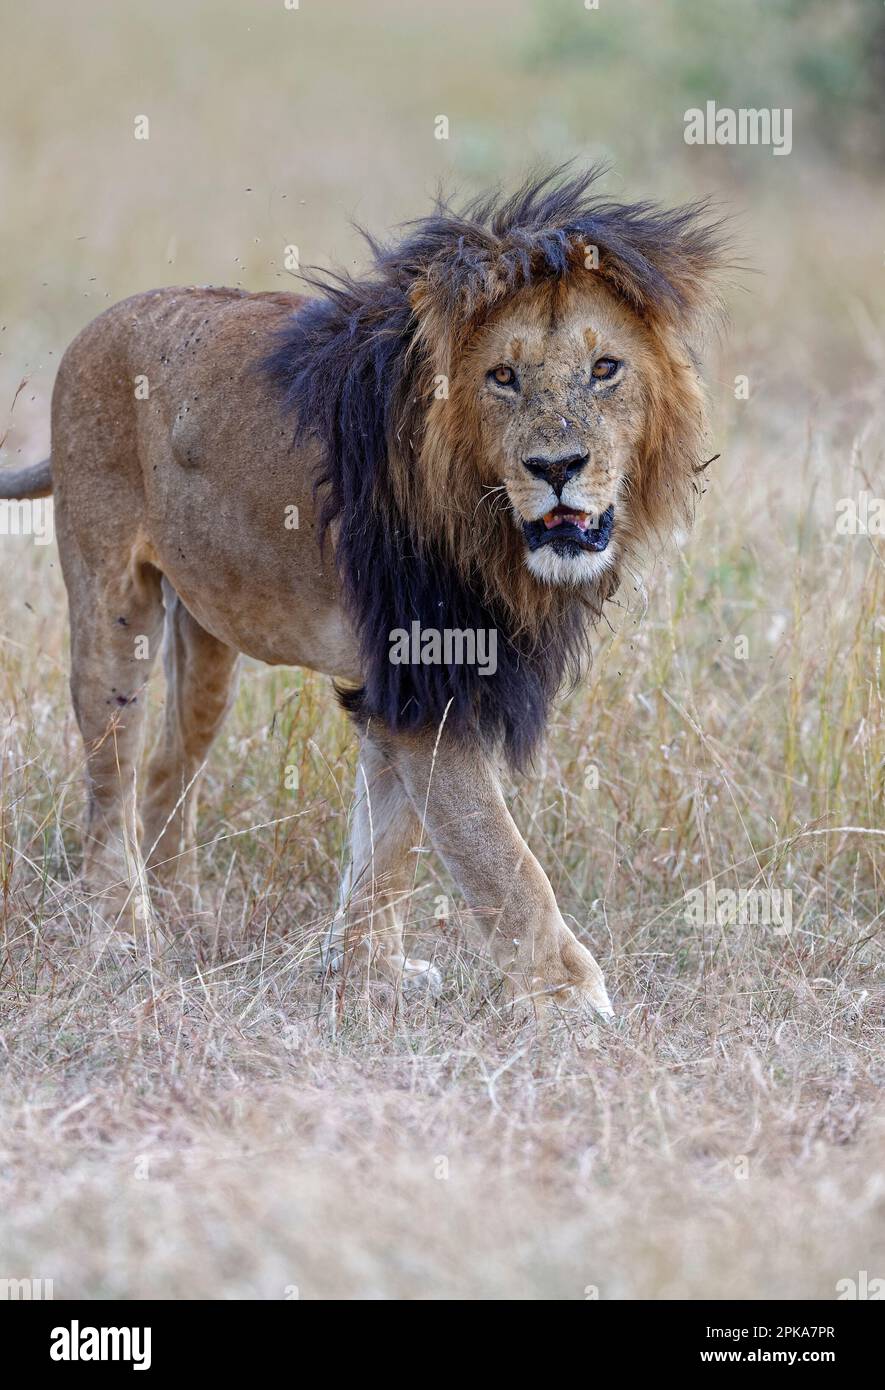 Maned lion (Panthera leo) with very dark mane, Maasai Mara Game Reserve, Kenya. Stock Photo